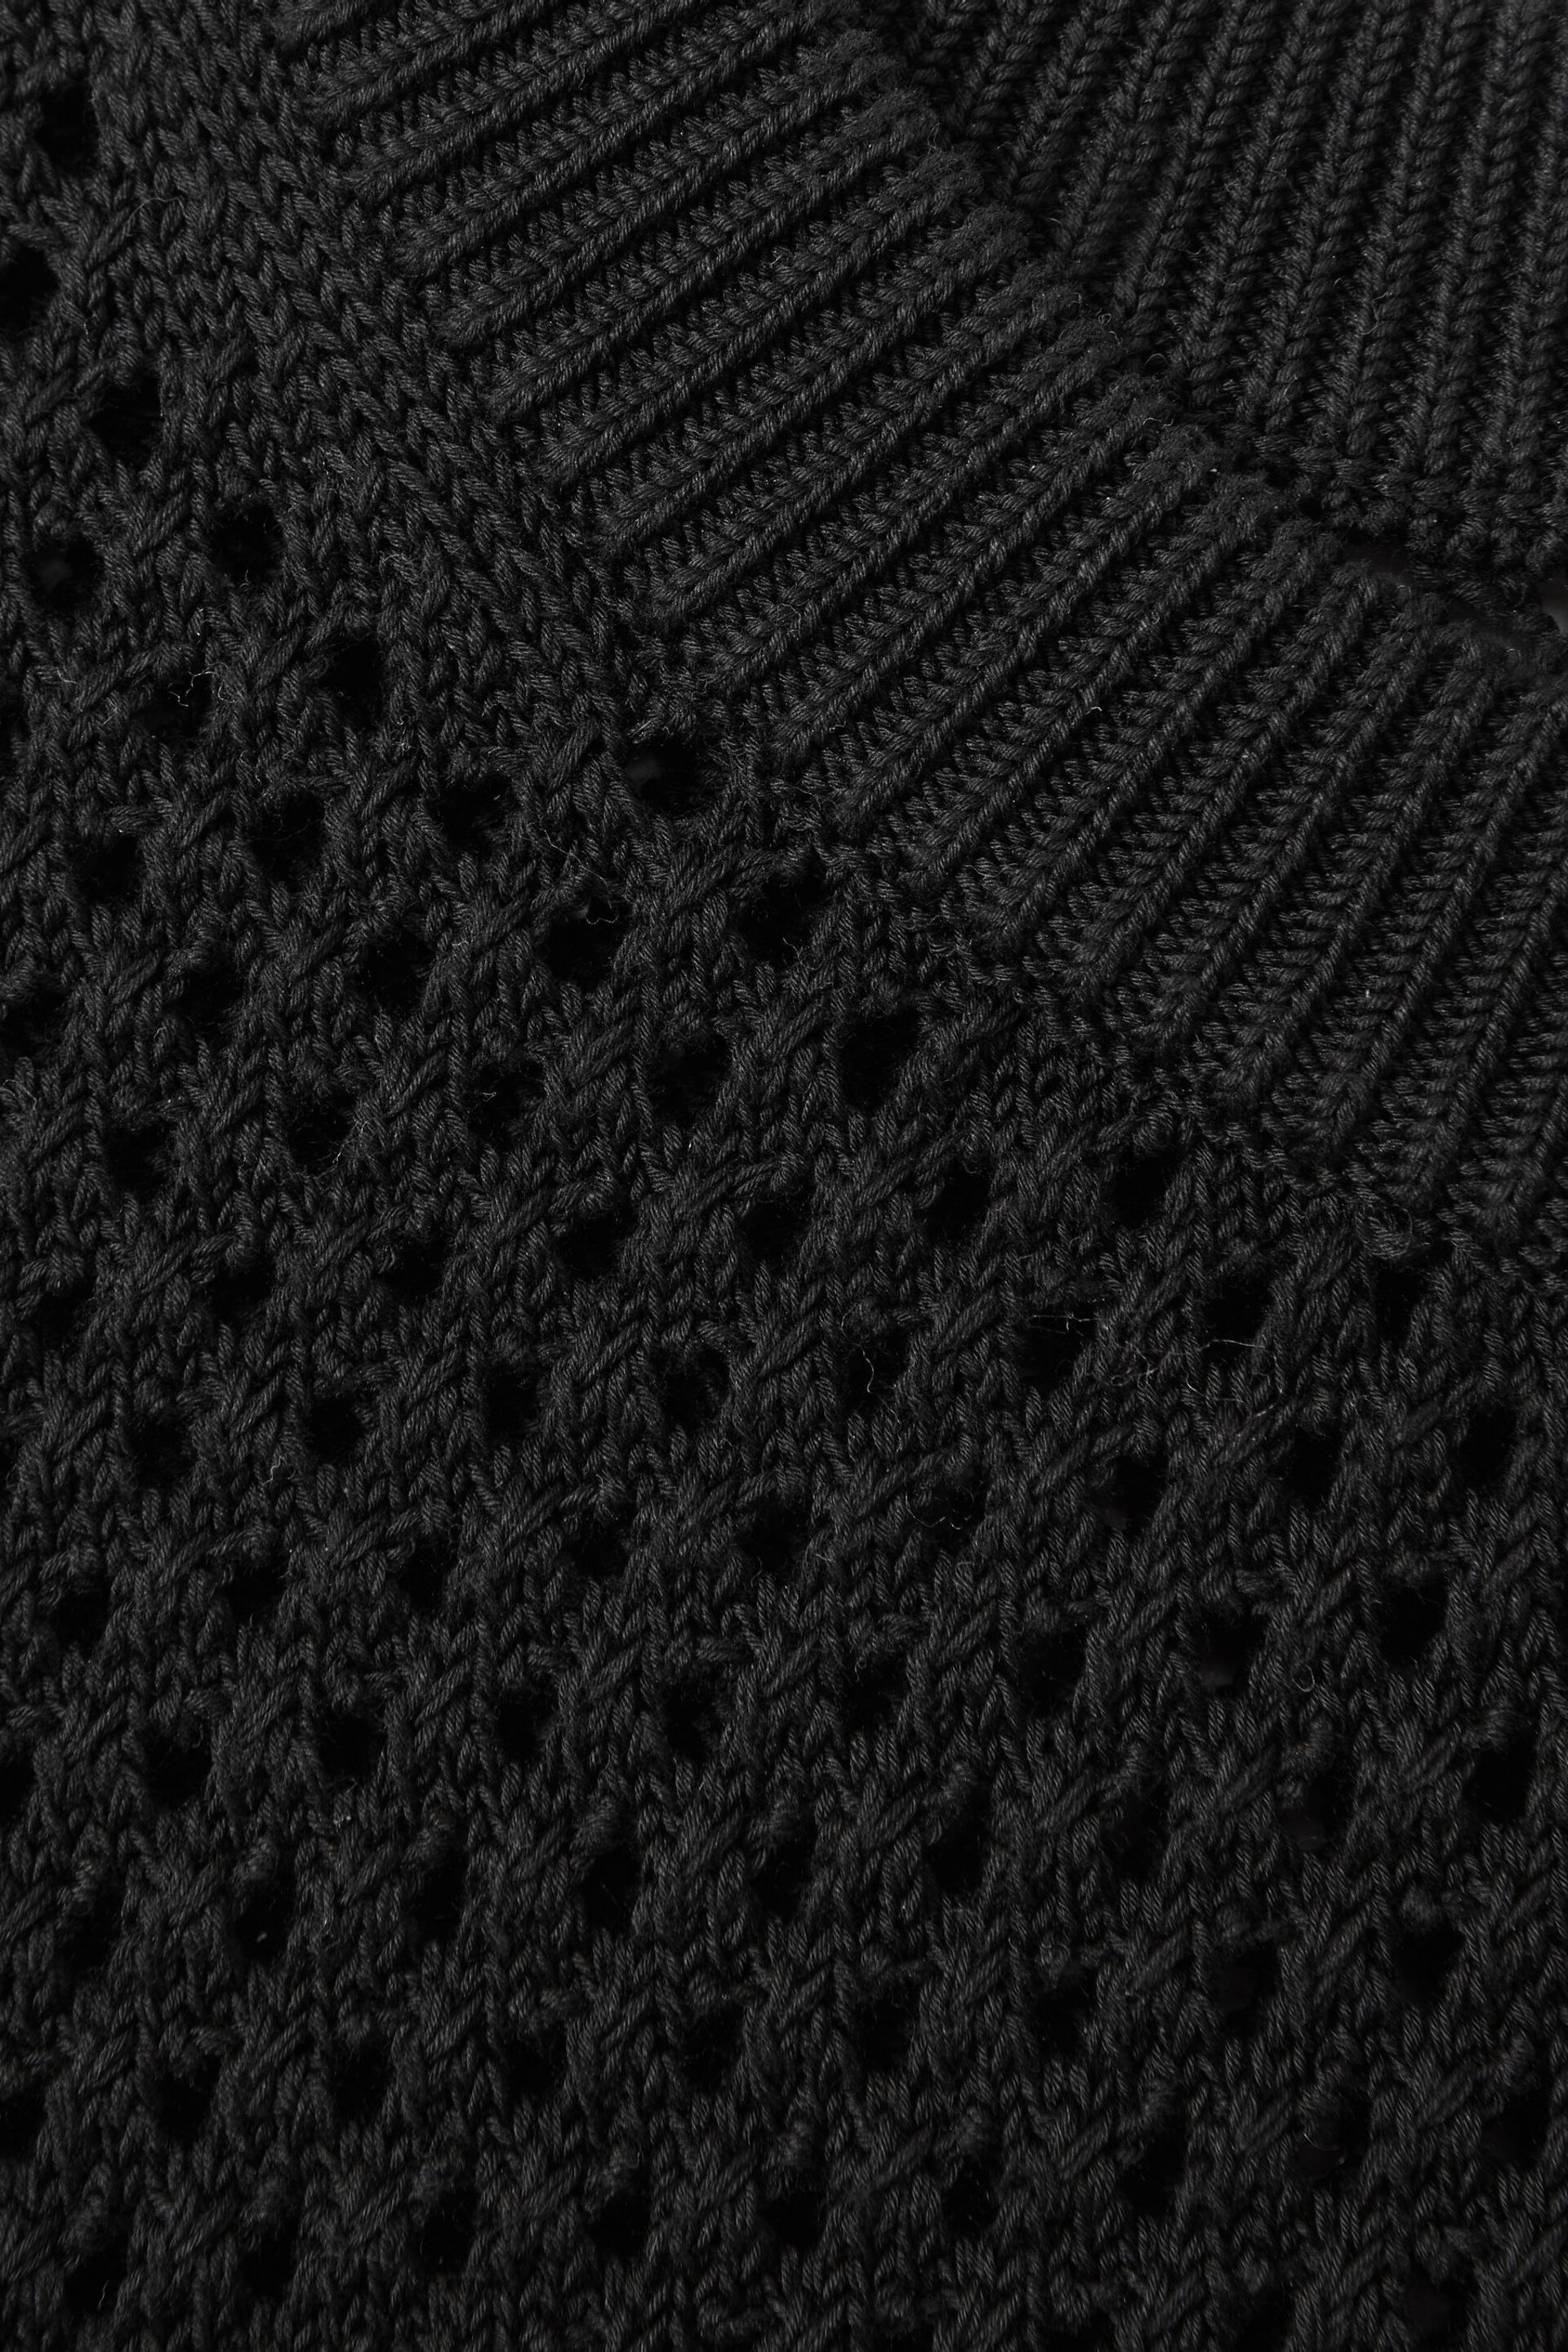 Reiss Black Dandy Cotton Blend Crochet Vest - Image 4 of 4